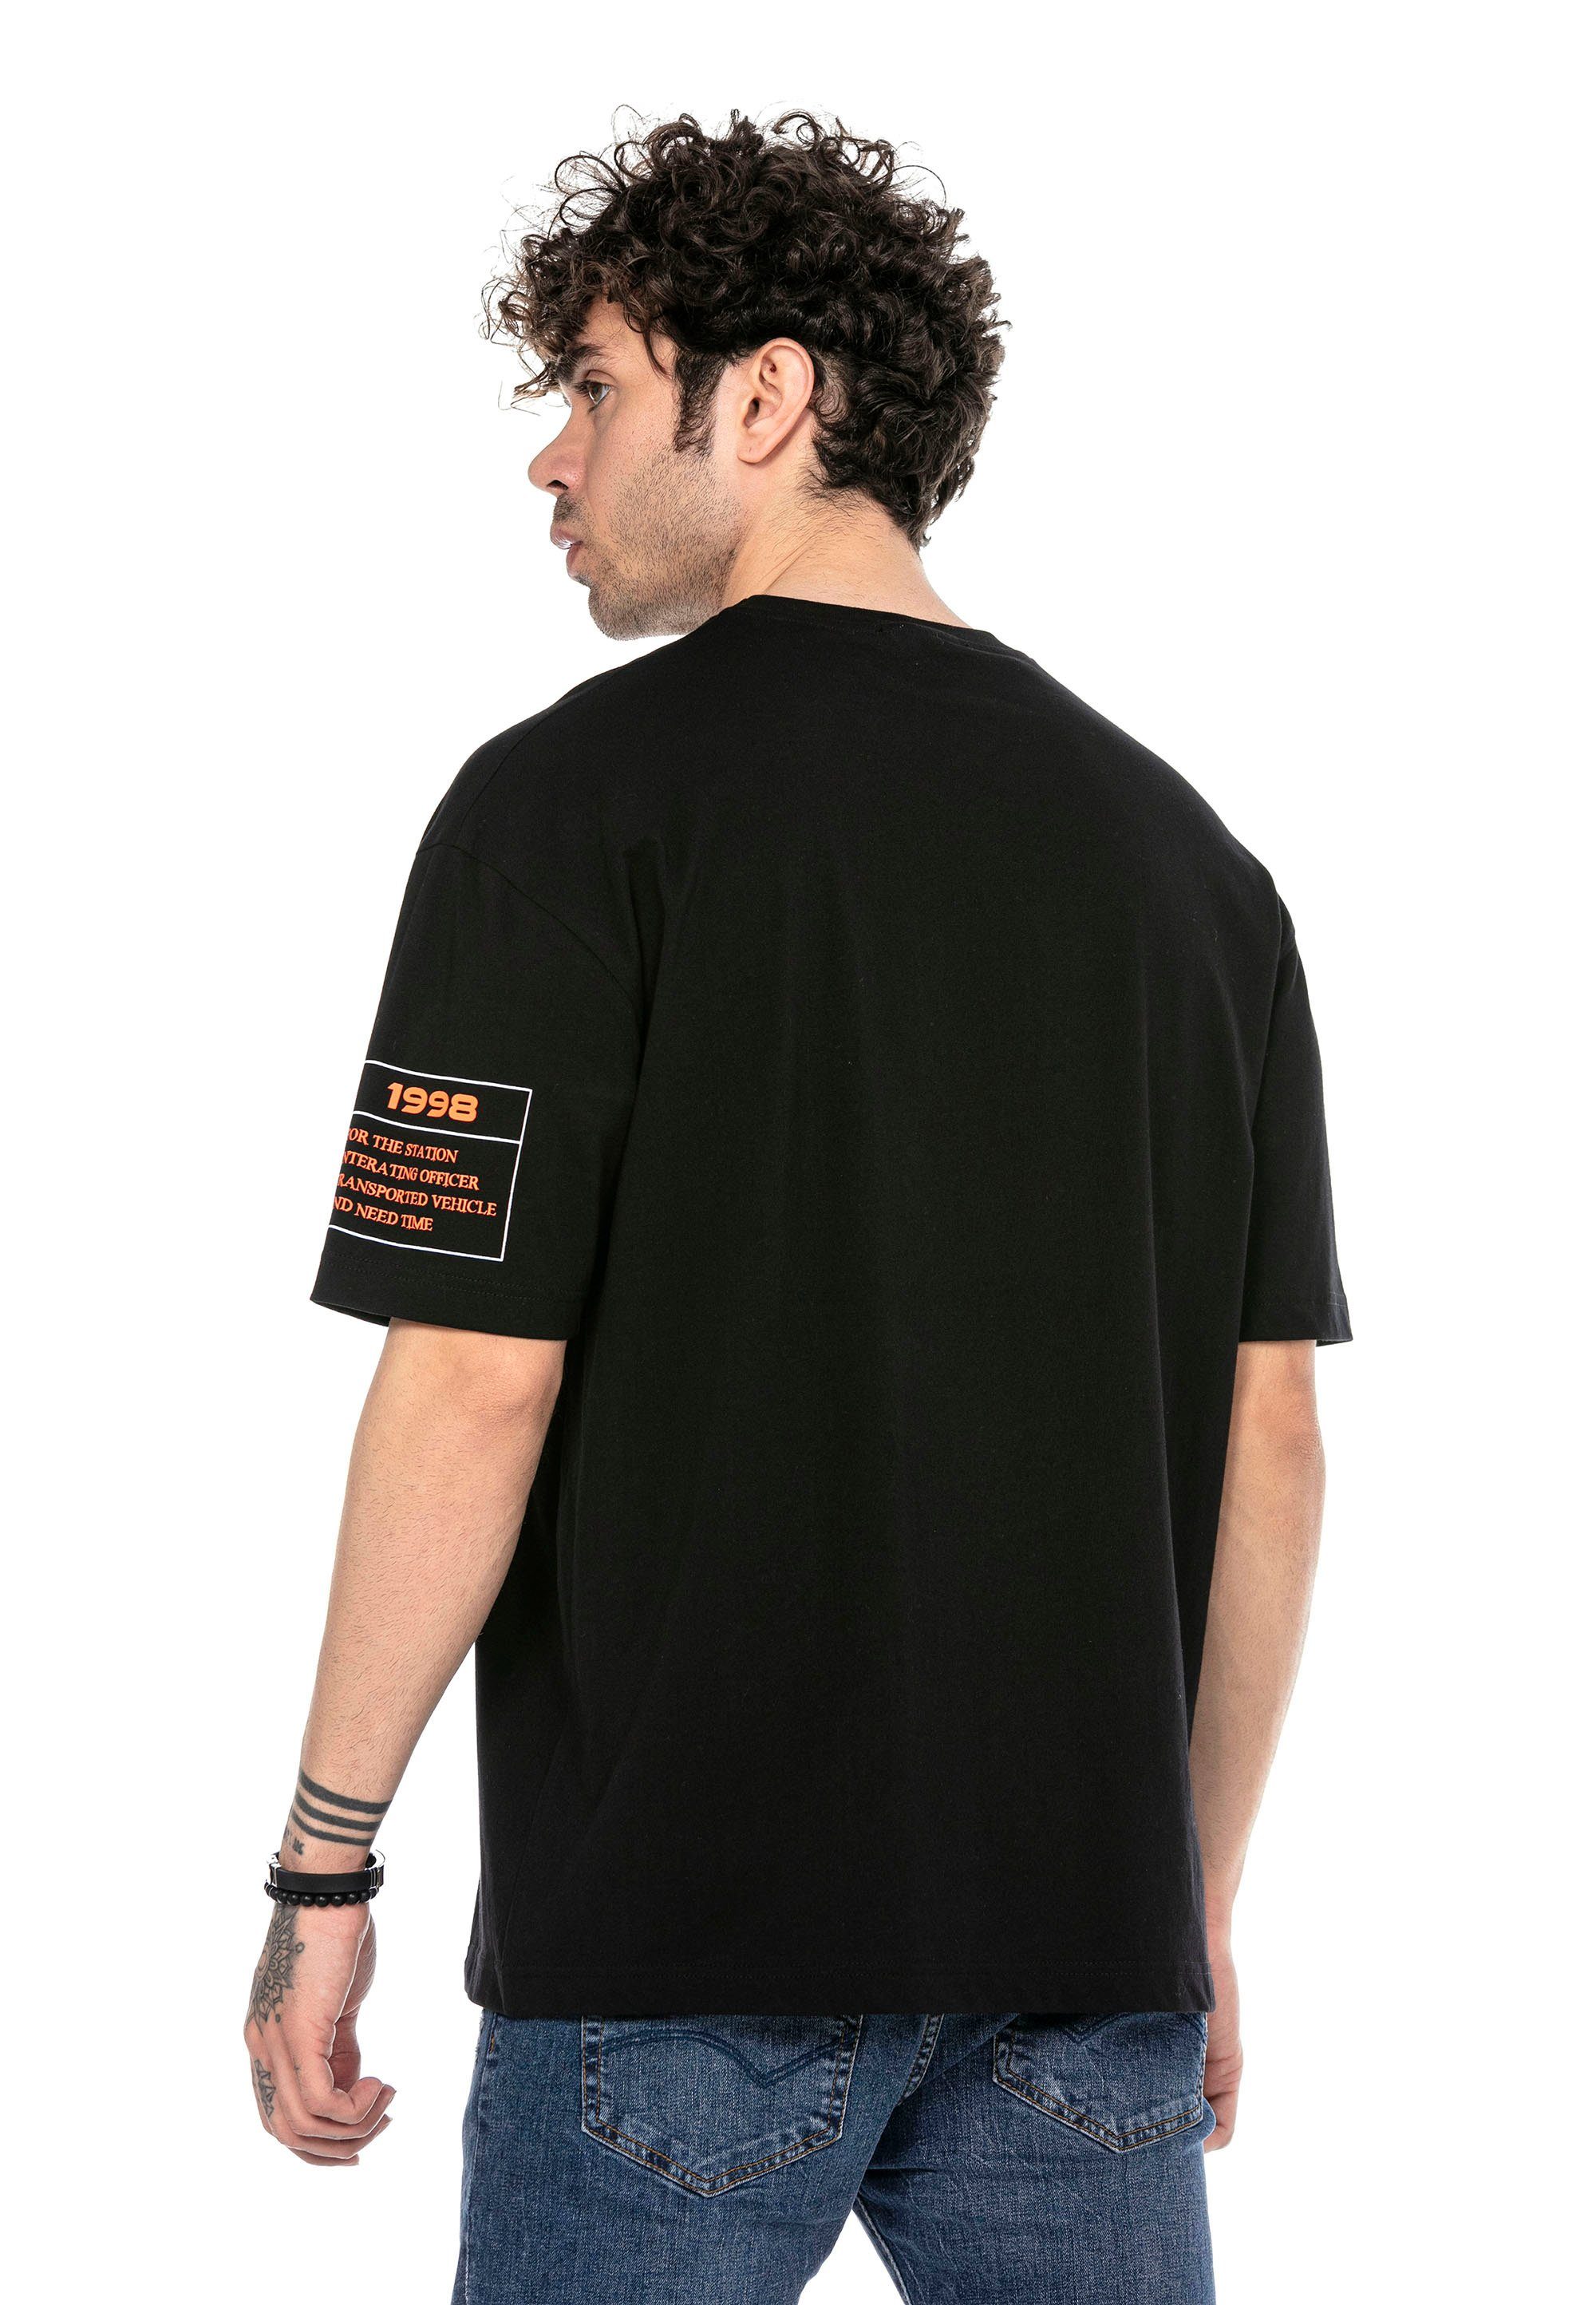 RedBridge T-Shirt stylischem mit schwarz McAllen Totenkopf-Print